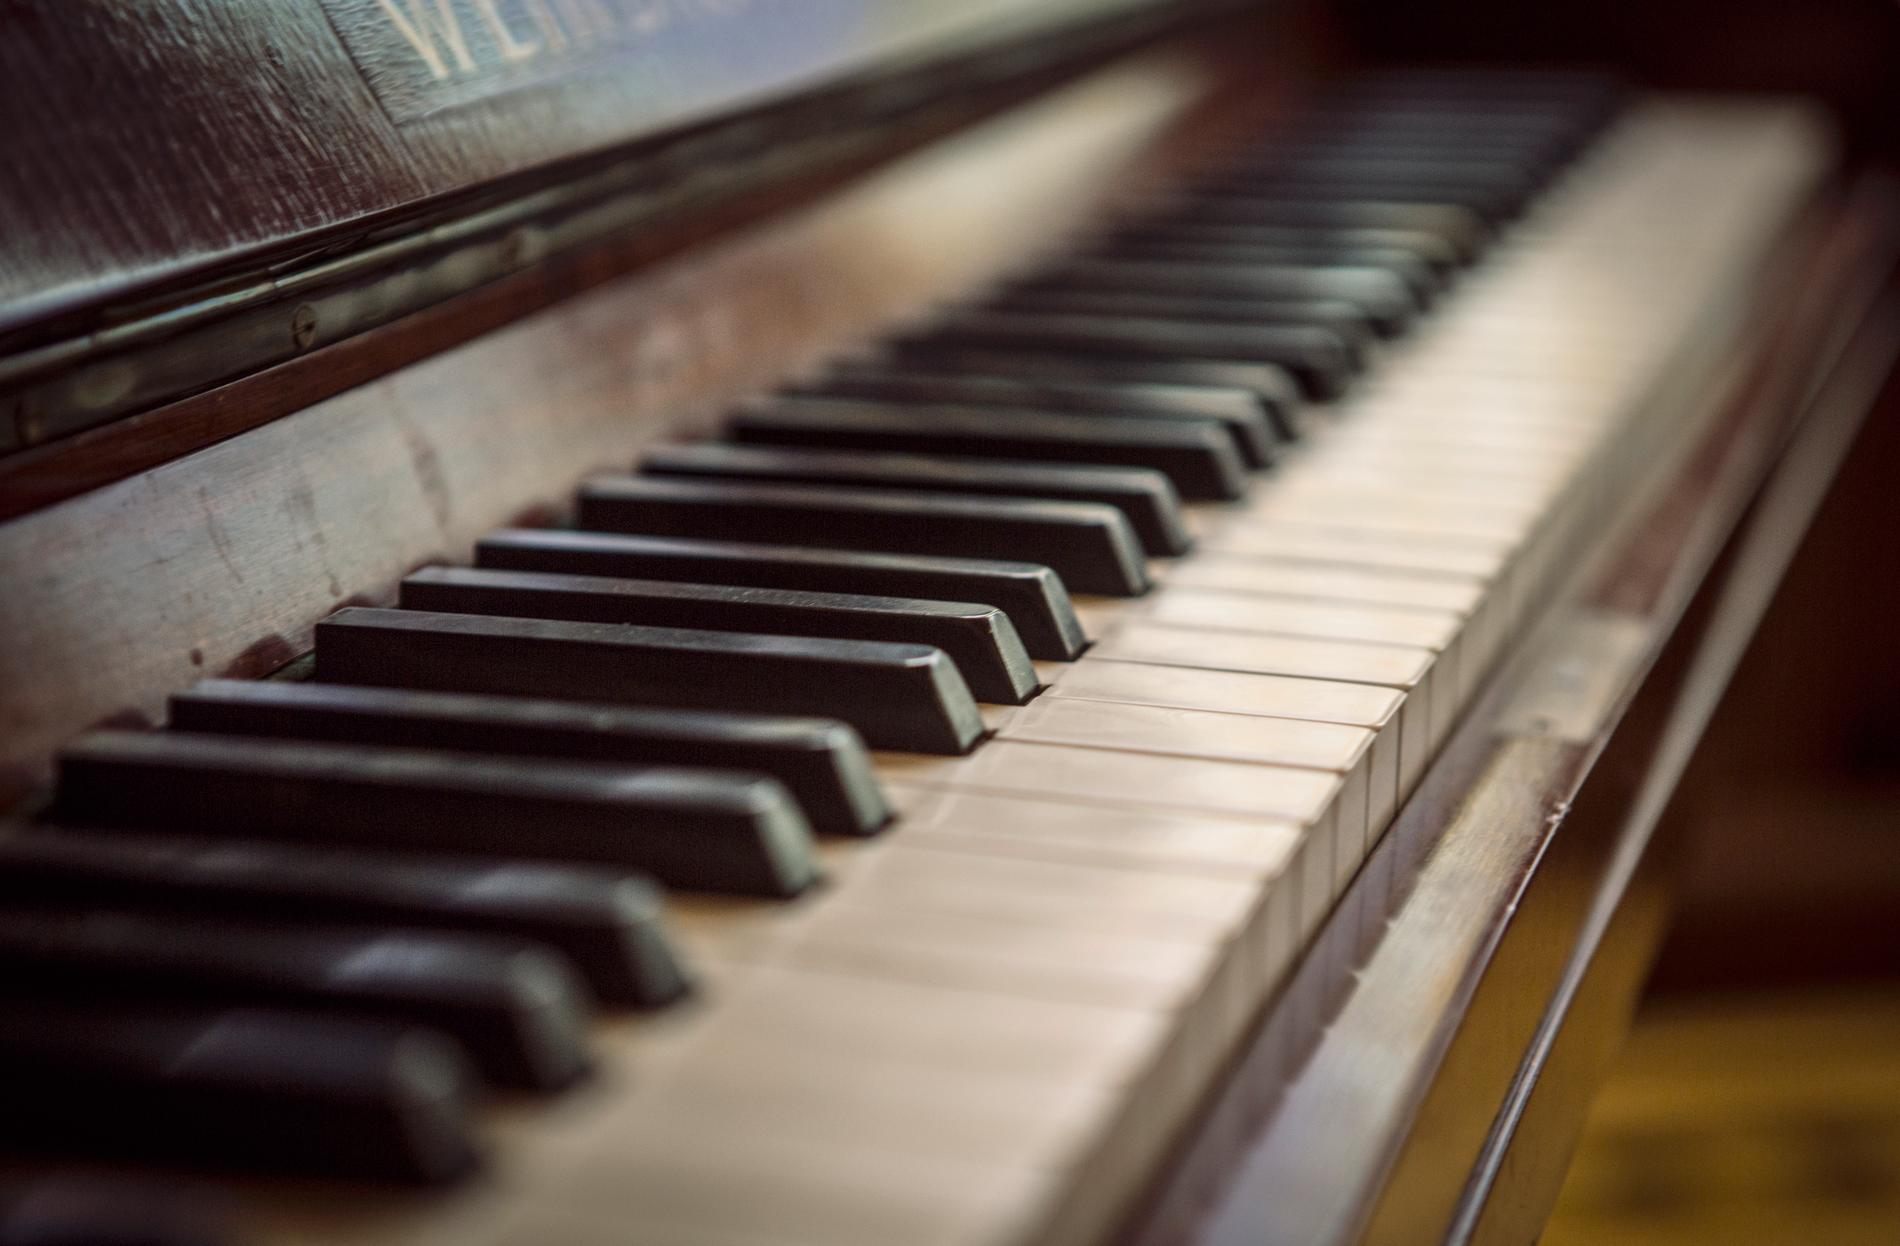 Forskare menar att musikterapi kan öka dementas välbefinnande. Arkivbild.